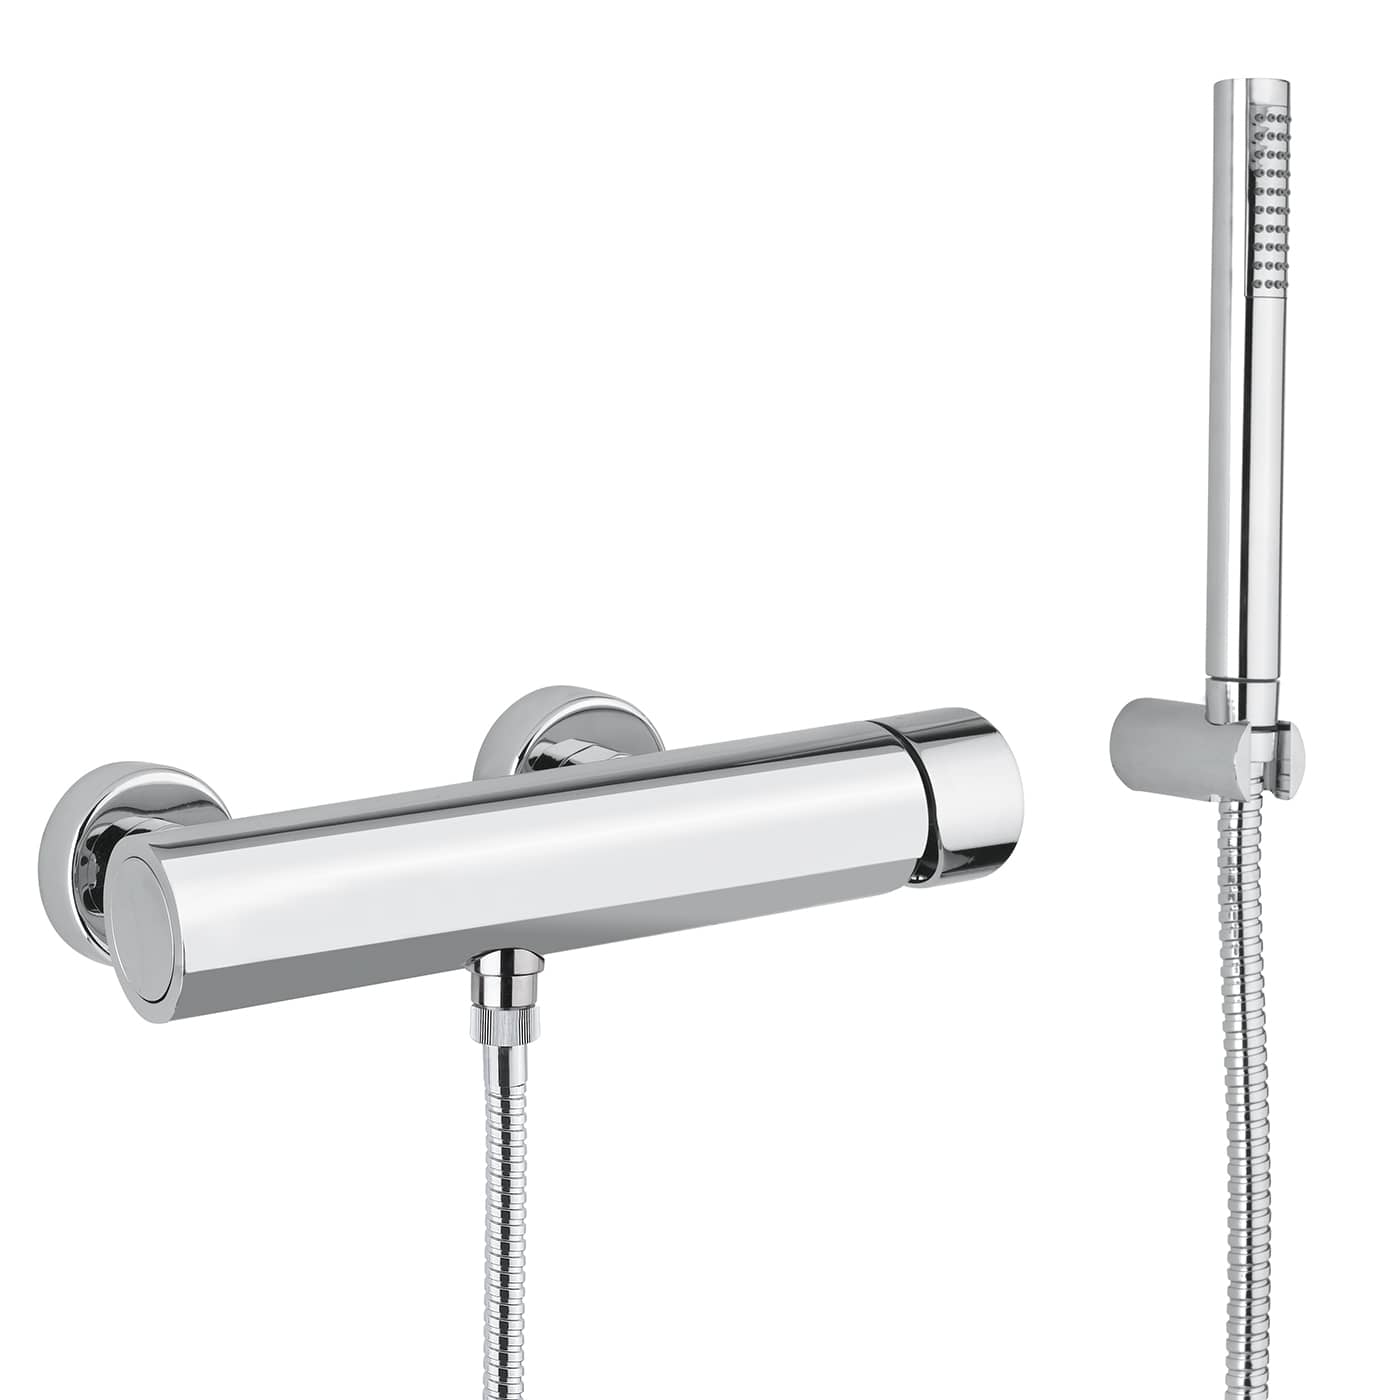 MRVE010RO - Monocomando esterno per vasca con kit doccia